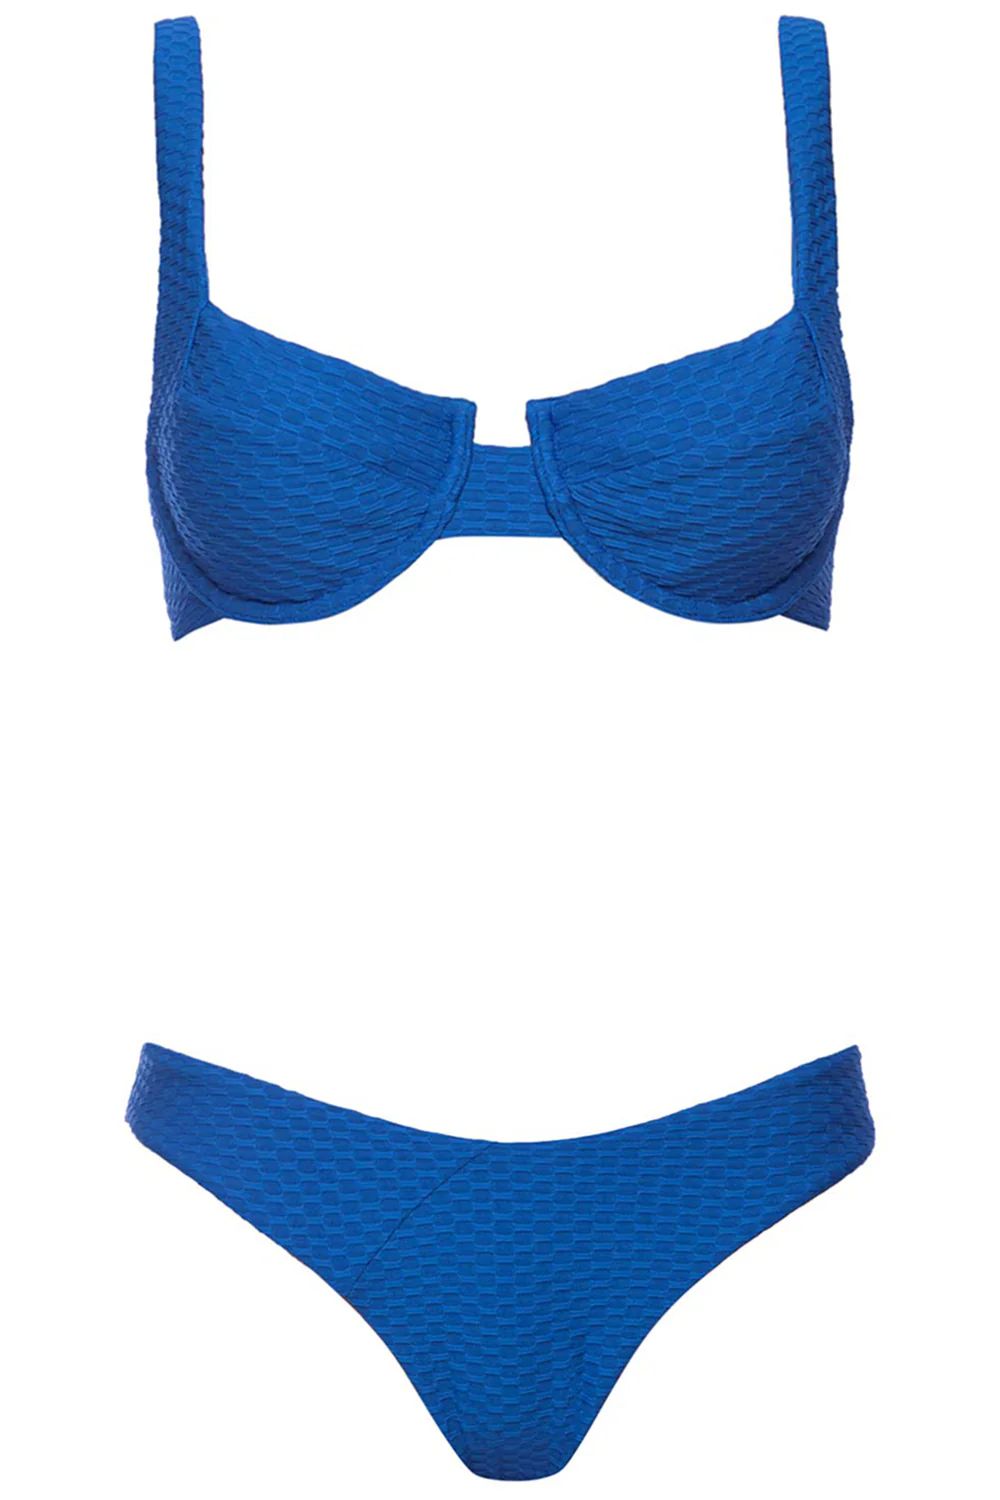 Laguna Bikini Blue Set | VETCHY